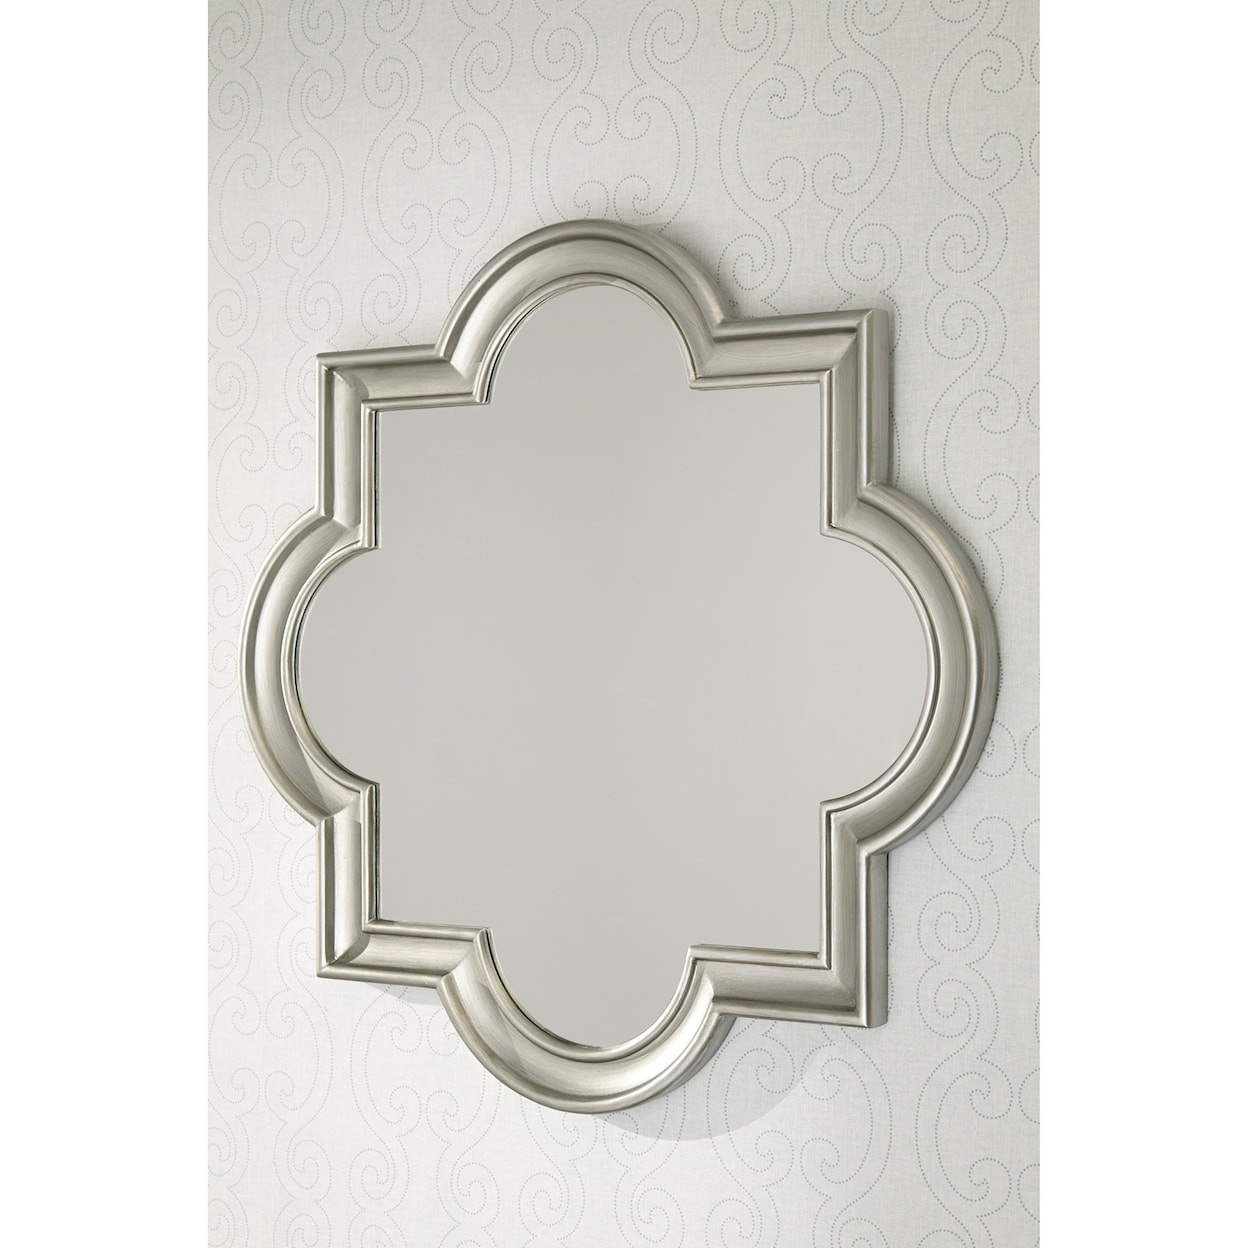 Signature Design by Ashley Furniture Accent Mirrors Desma Gold Finish Accent Mirror